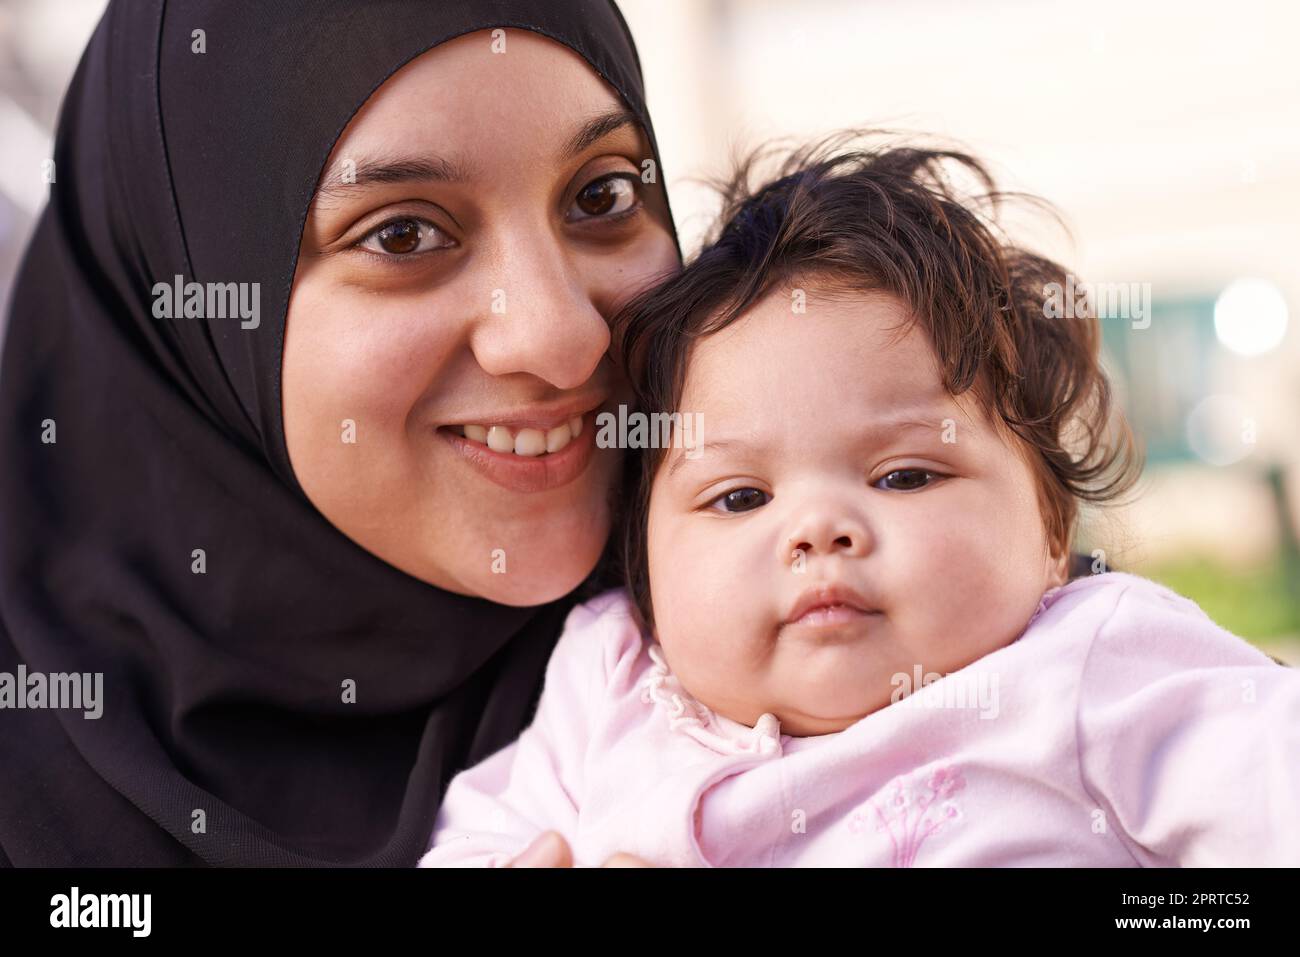 Mütter kleine Liebe. Eine muslimische Mutter und ihr kleines Mädchen. Stockfoto